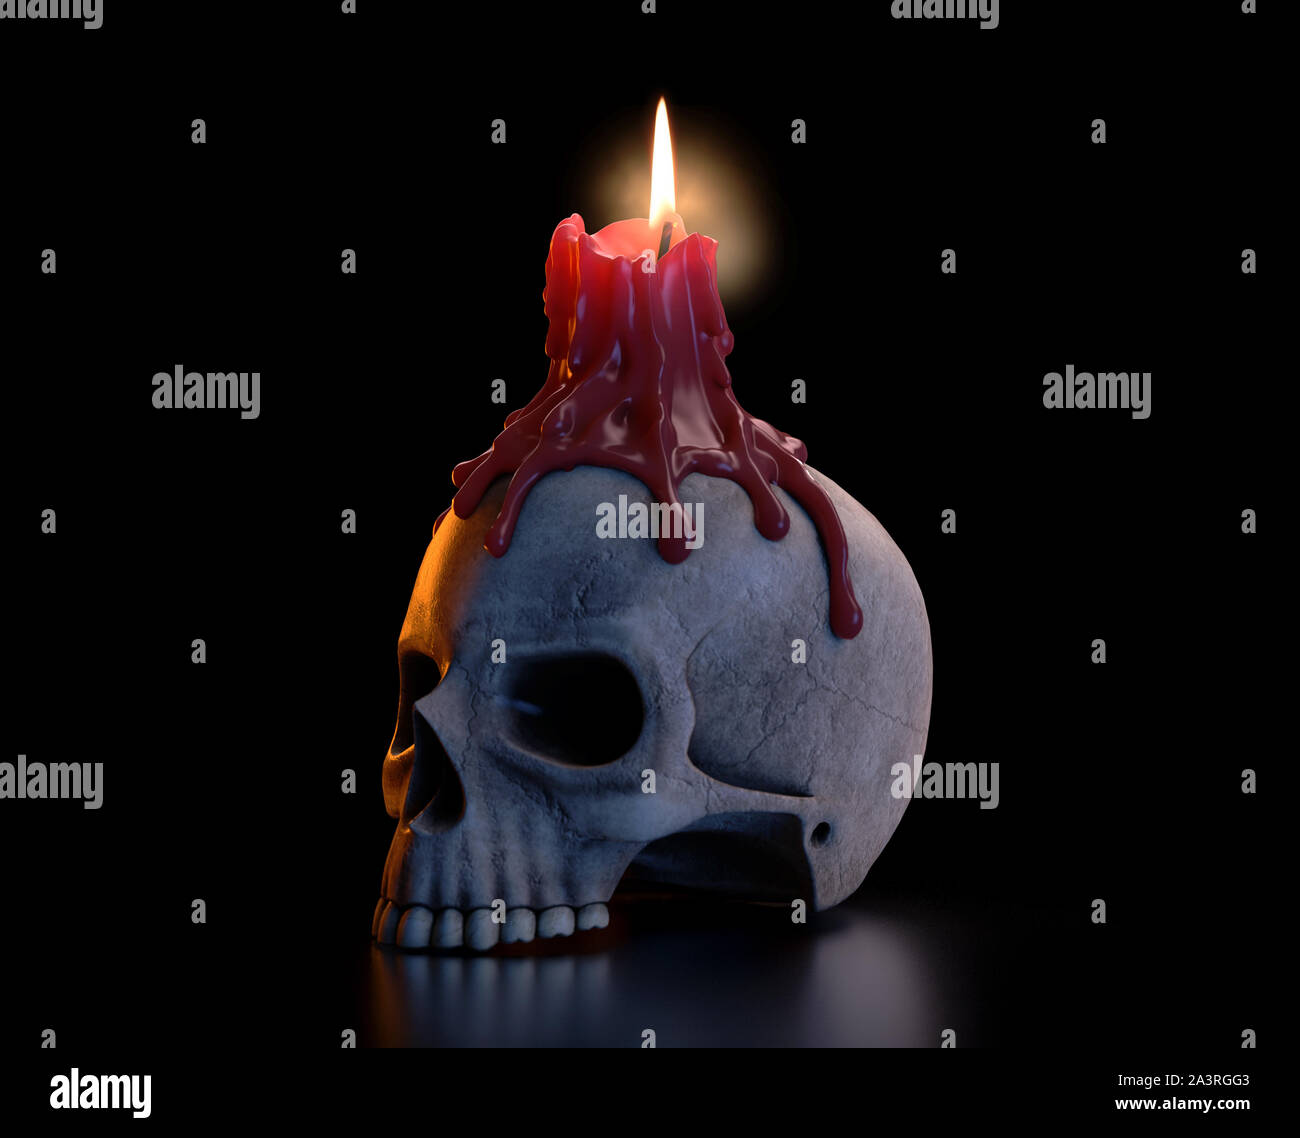 Ein Konzept mit einem menschlichen Schädel, gekrönt mit einem Schmelzpunkt rote Kerze auf einem isolierten dunklen Studio Hintergrund leuchtet Stockfoto